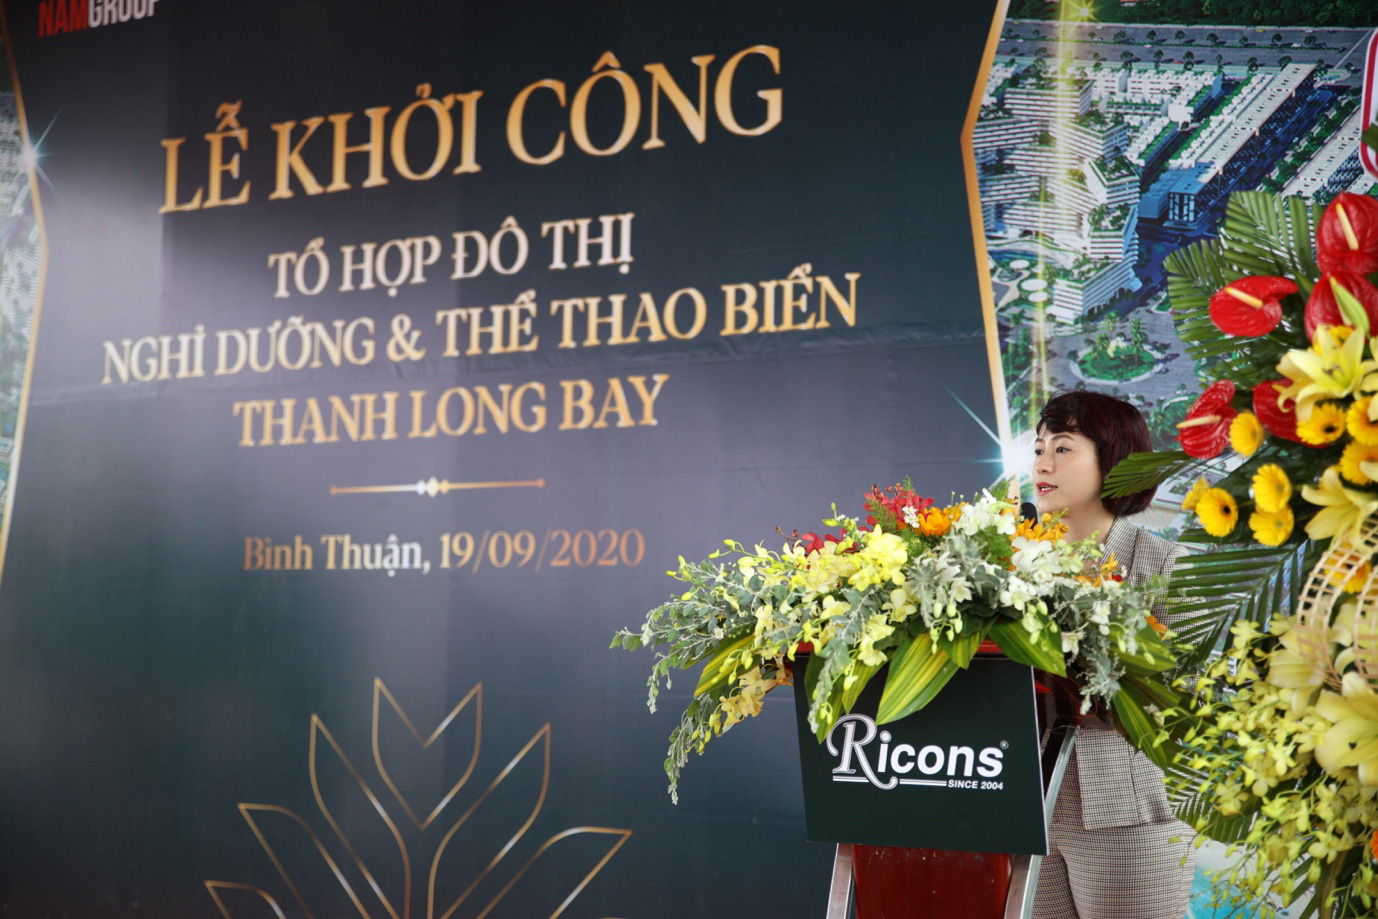 Nam Group khởi công tổ hợp đô thị nghỉ dưỡng và thể thao biển chuẩn 5 sao quốc tế tại Bình Thuận - Ảnh 2.